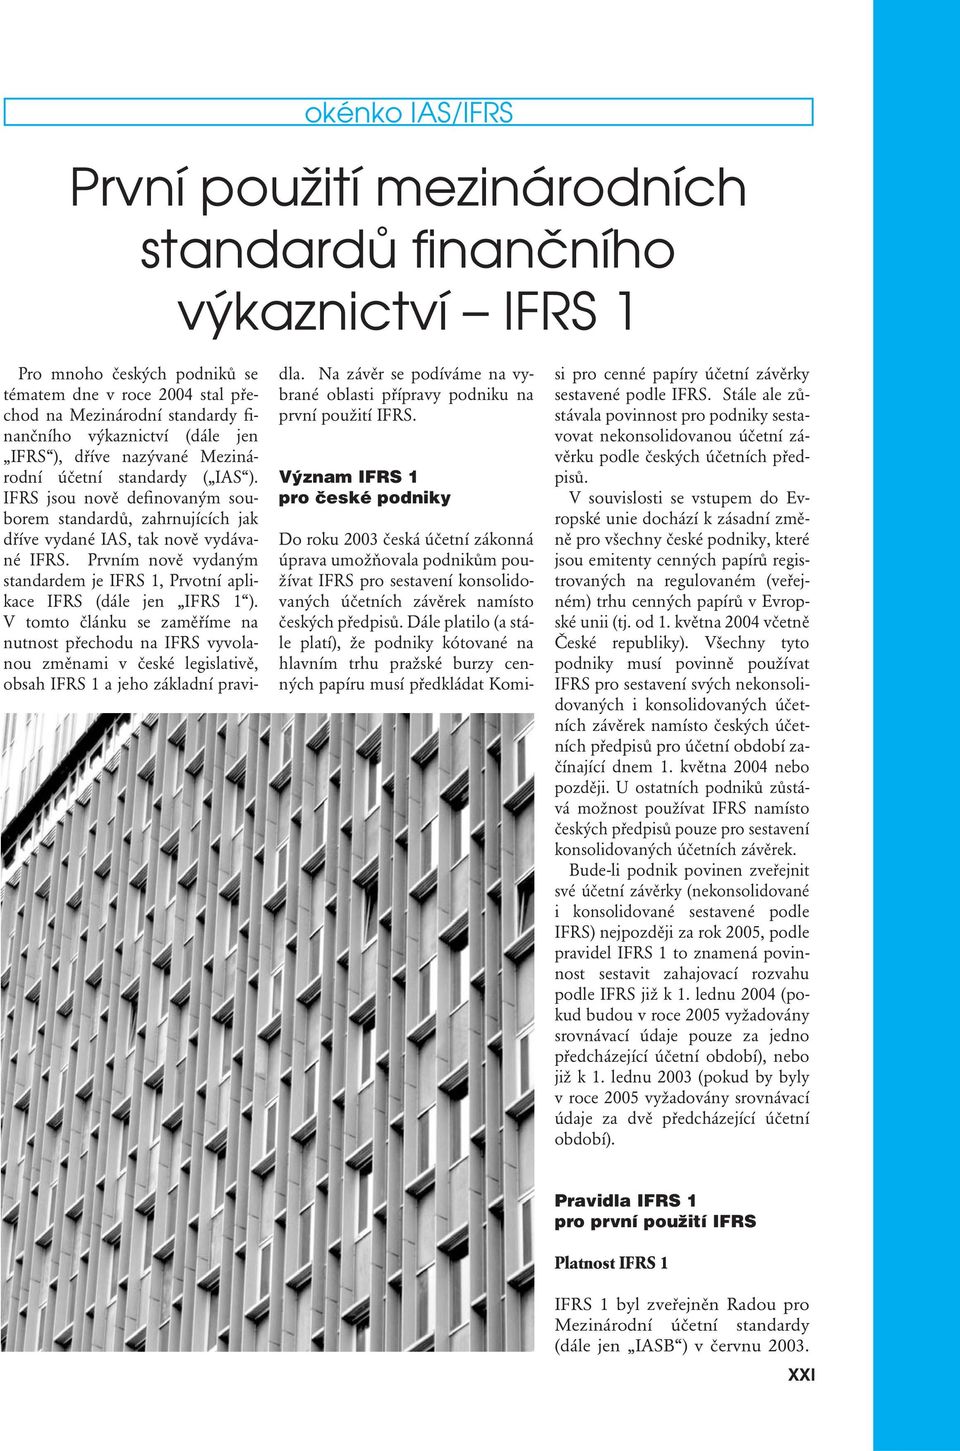 Prvním nově vydaným standardem je IFRS 1, Prvotní aplikace IFRS (dále jen IFRS 1 ).